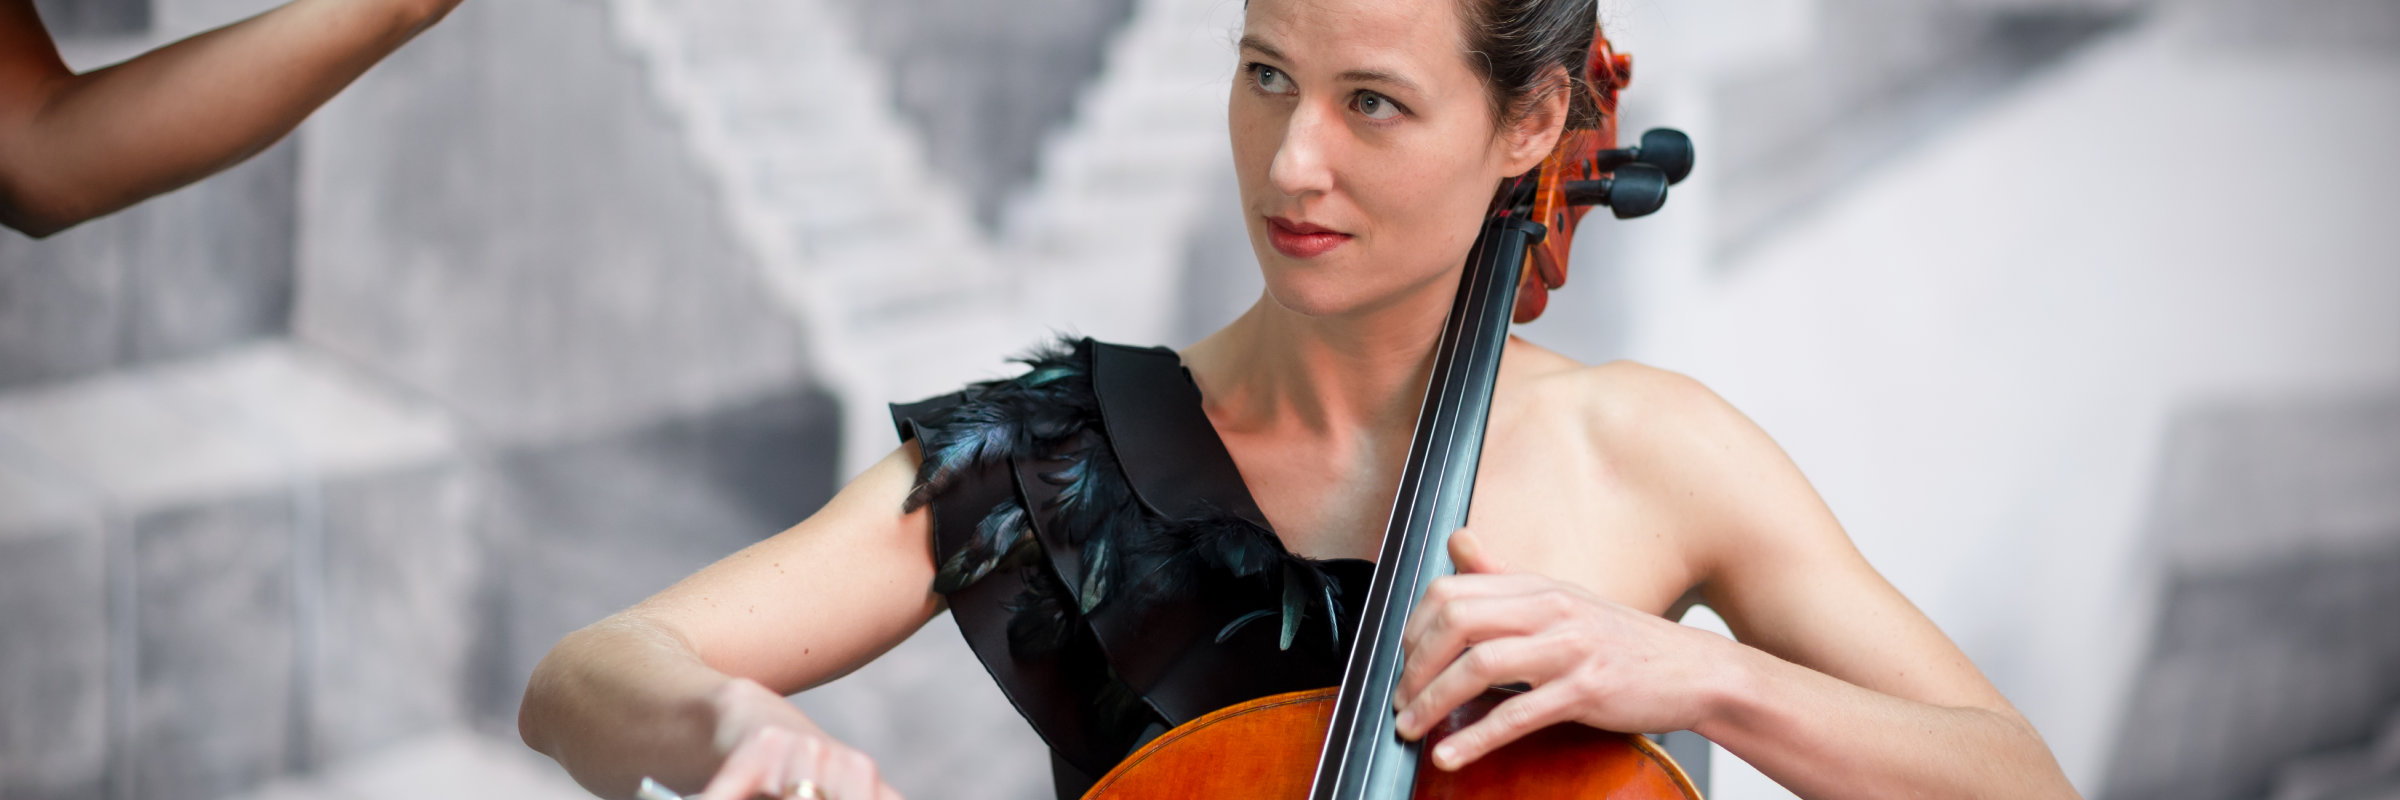 Bohdana Horecka, musicien Musique Slave en représentation à Val de Marne - photo de couverture n° 4